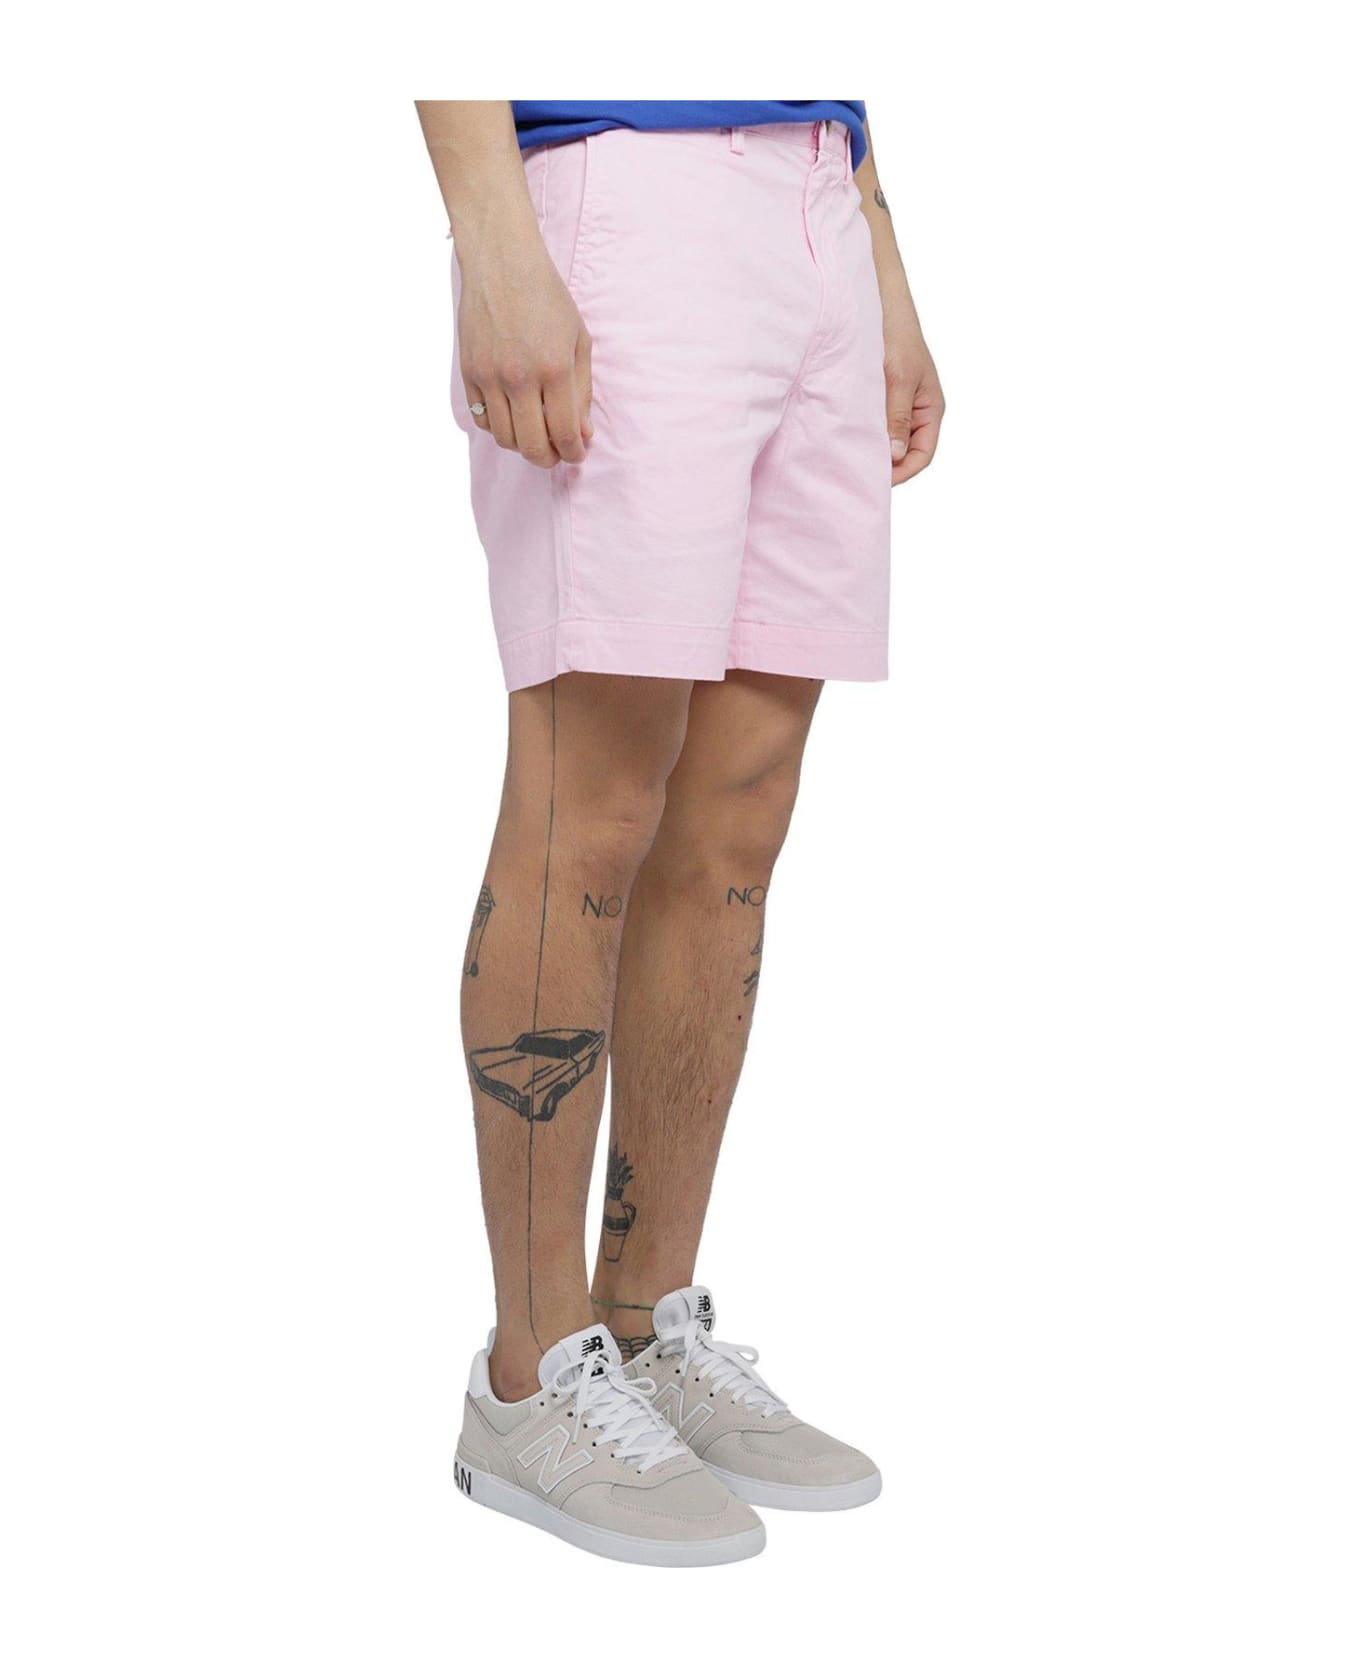 Polo Ralph Lauren Flat Short Shorts - Pink